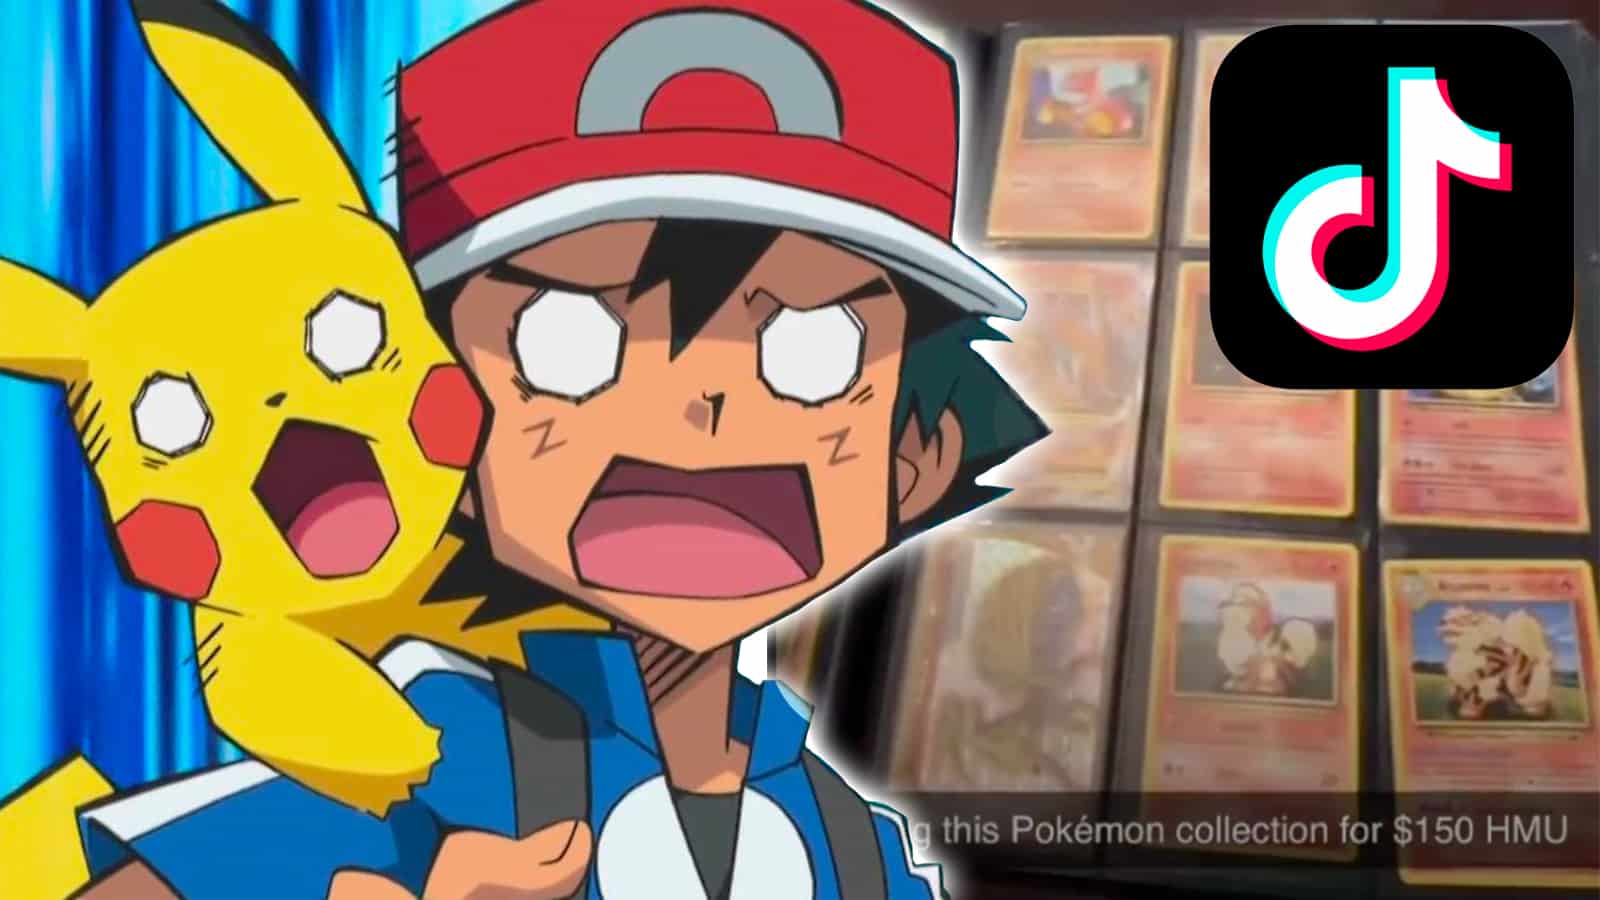 Pokemon fan freaks out after girlfriend "sells" Pokemon card collection in viral TikTok